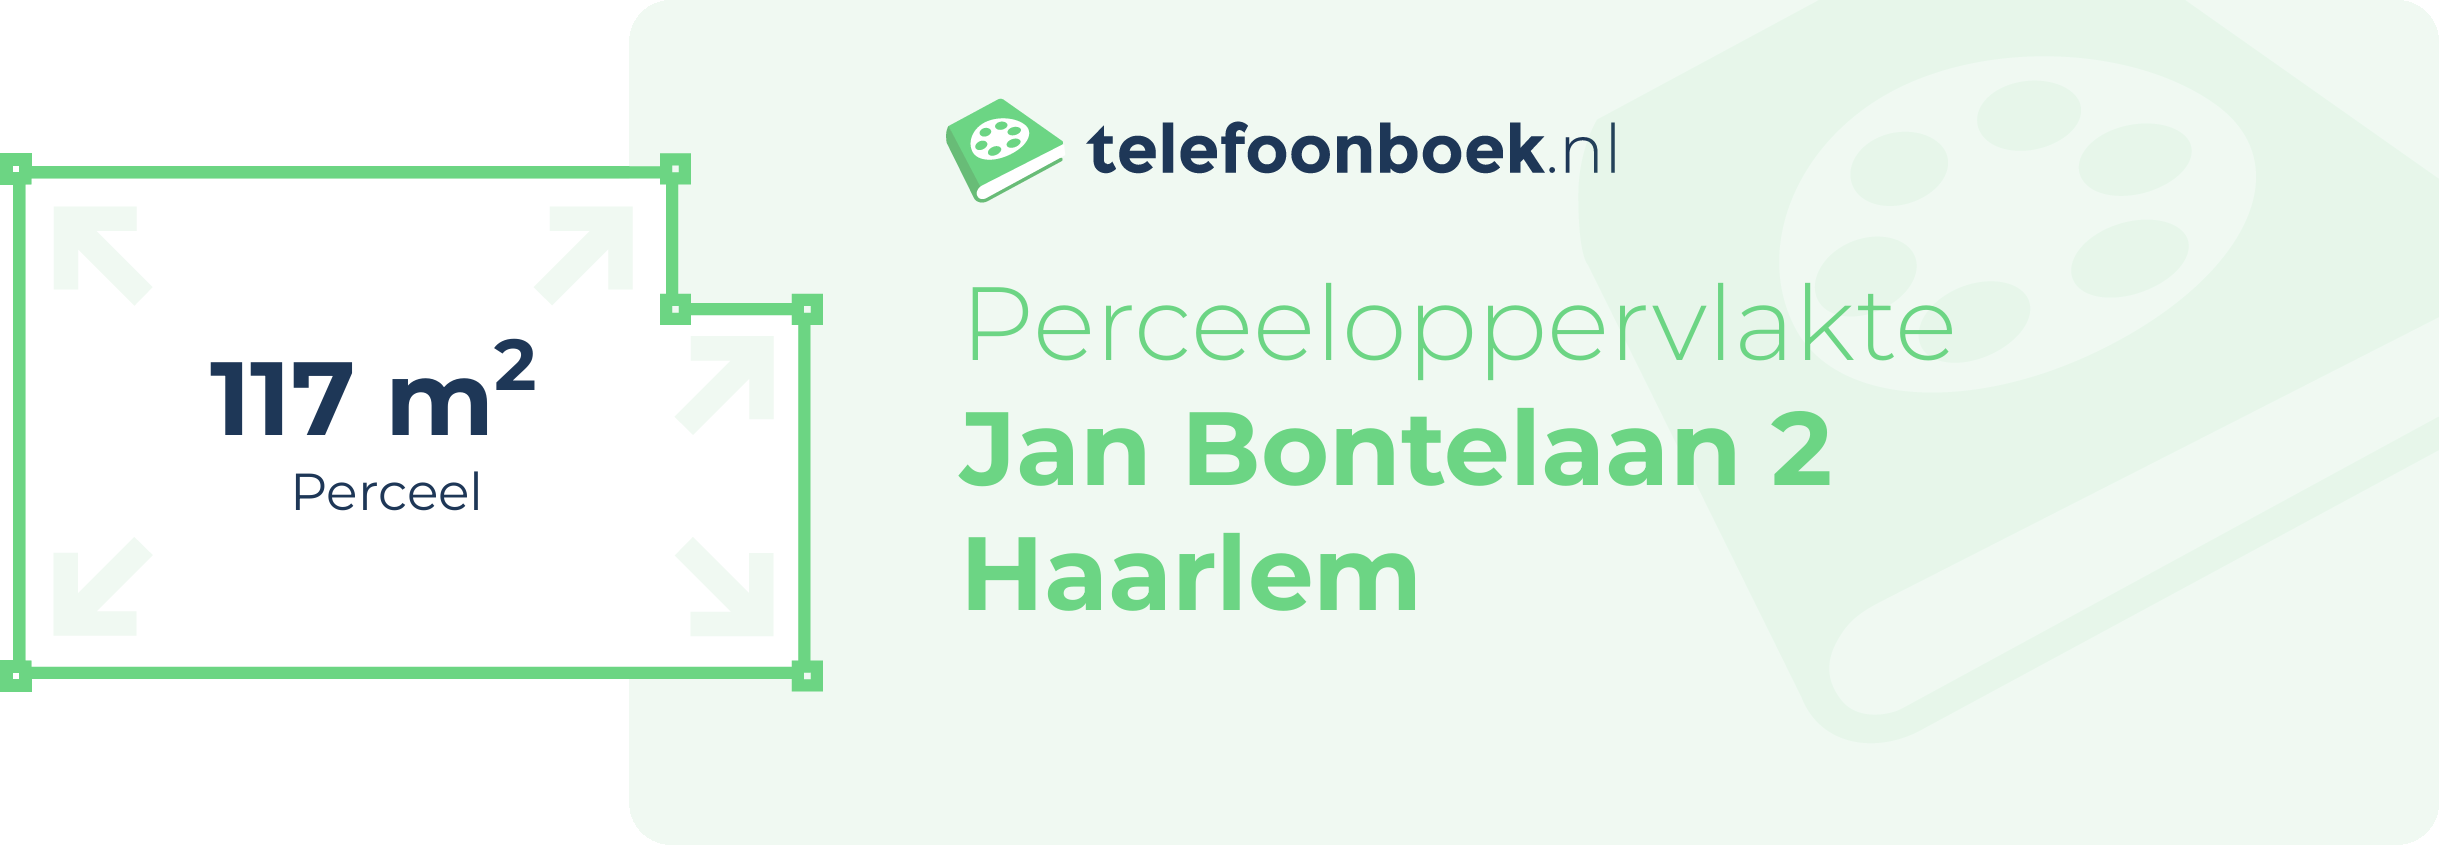 Perceeloppervlakte Jan Bontelaan 2 Haarlem